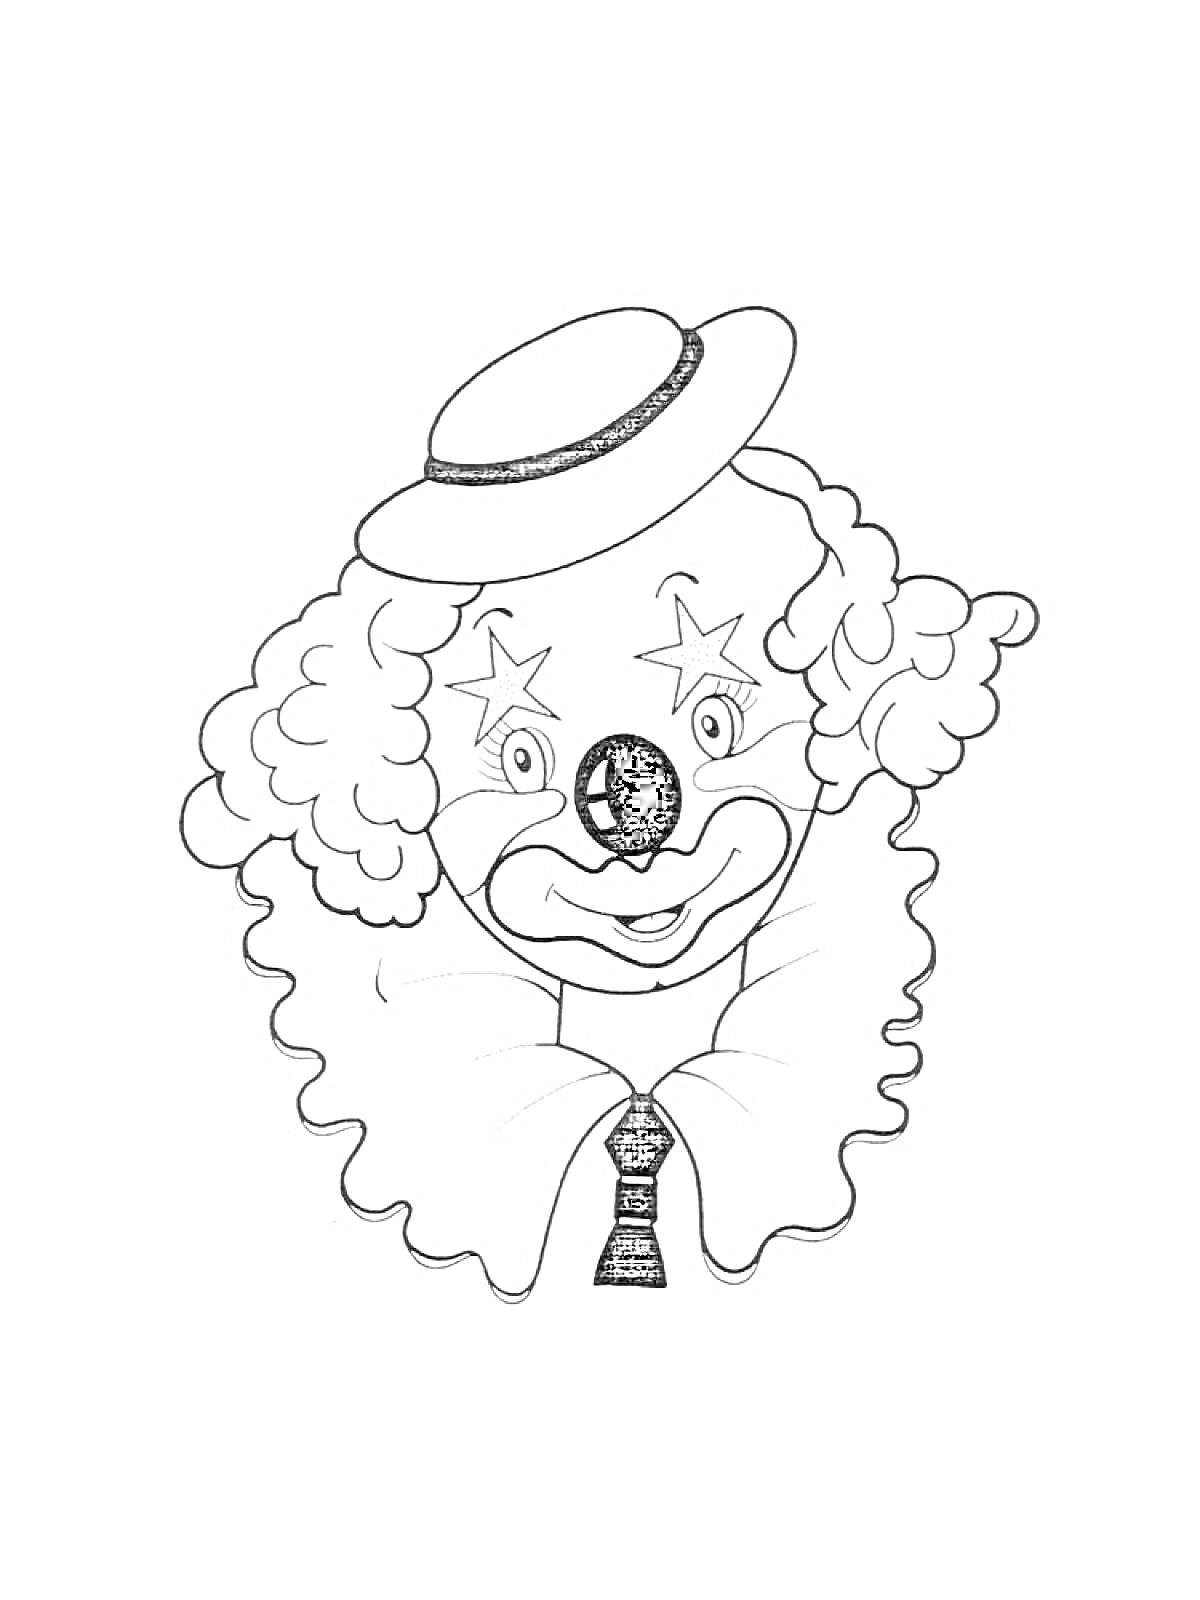 Раскраска Клоун с кудрявыми волосами, в цилиндре, с нарисованными звездами вокруг глаз и с галстуком